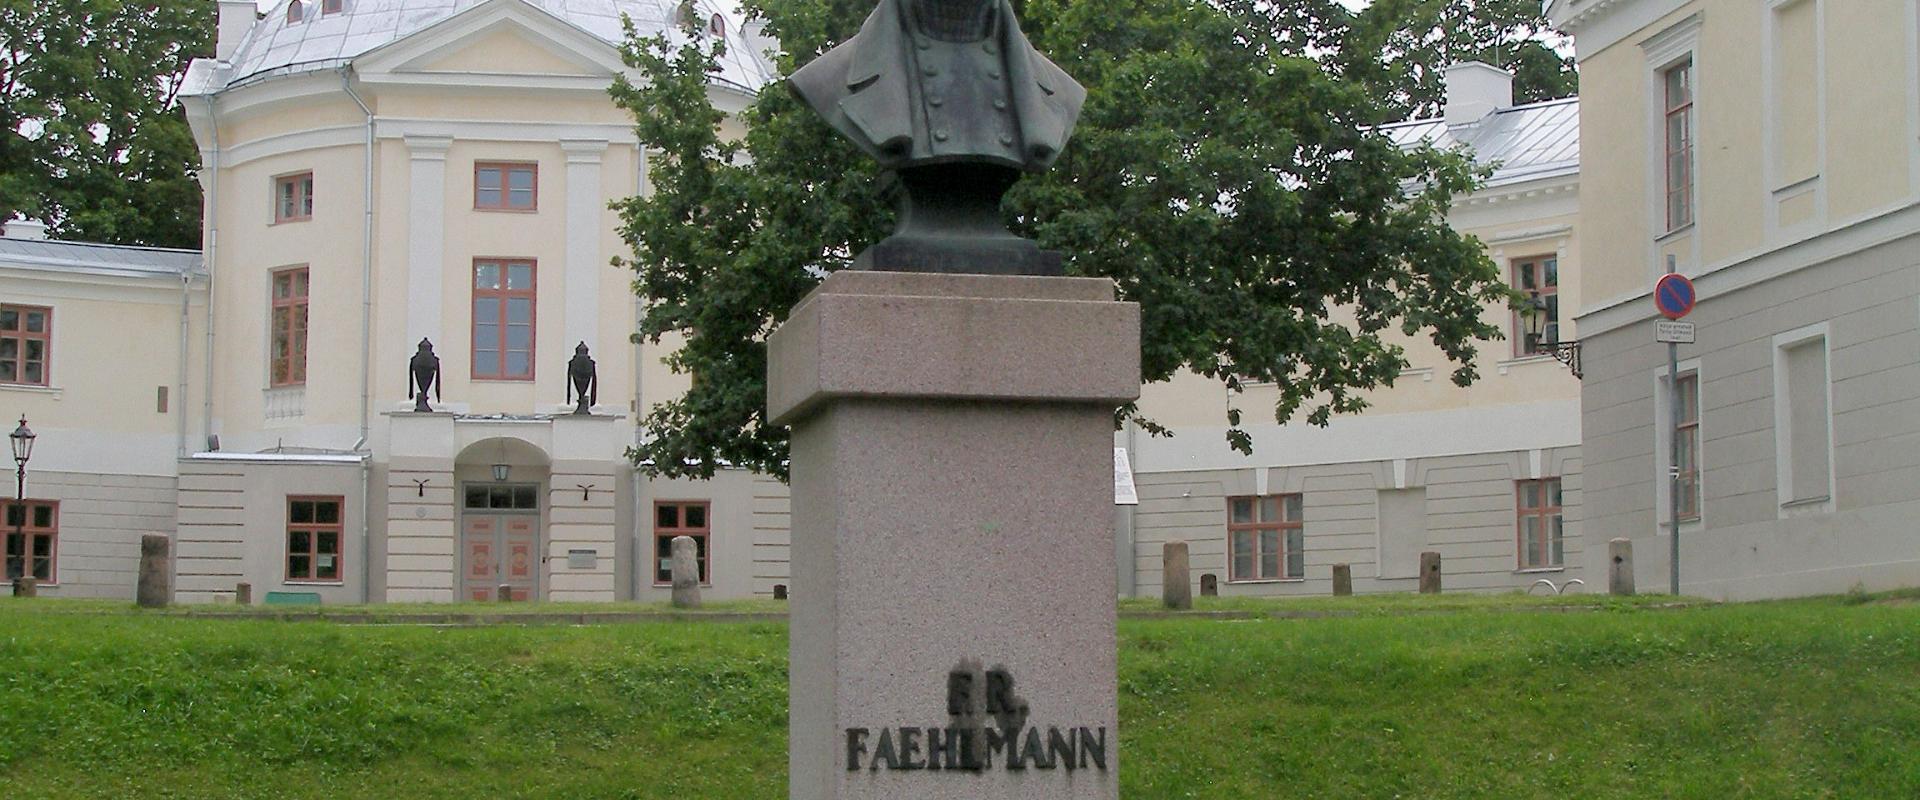 Das Denkmal für Fr. R. Faehlmann